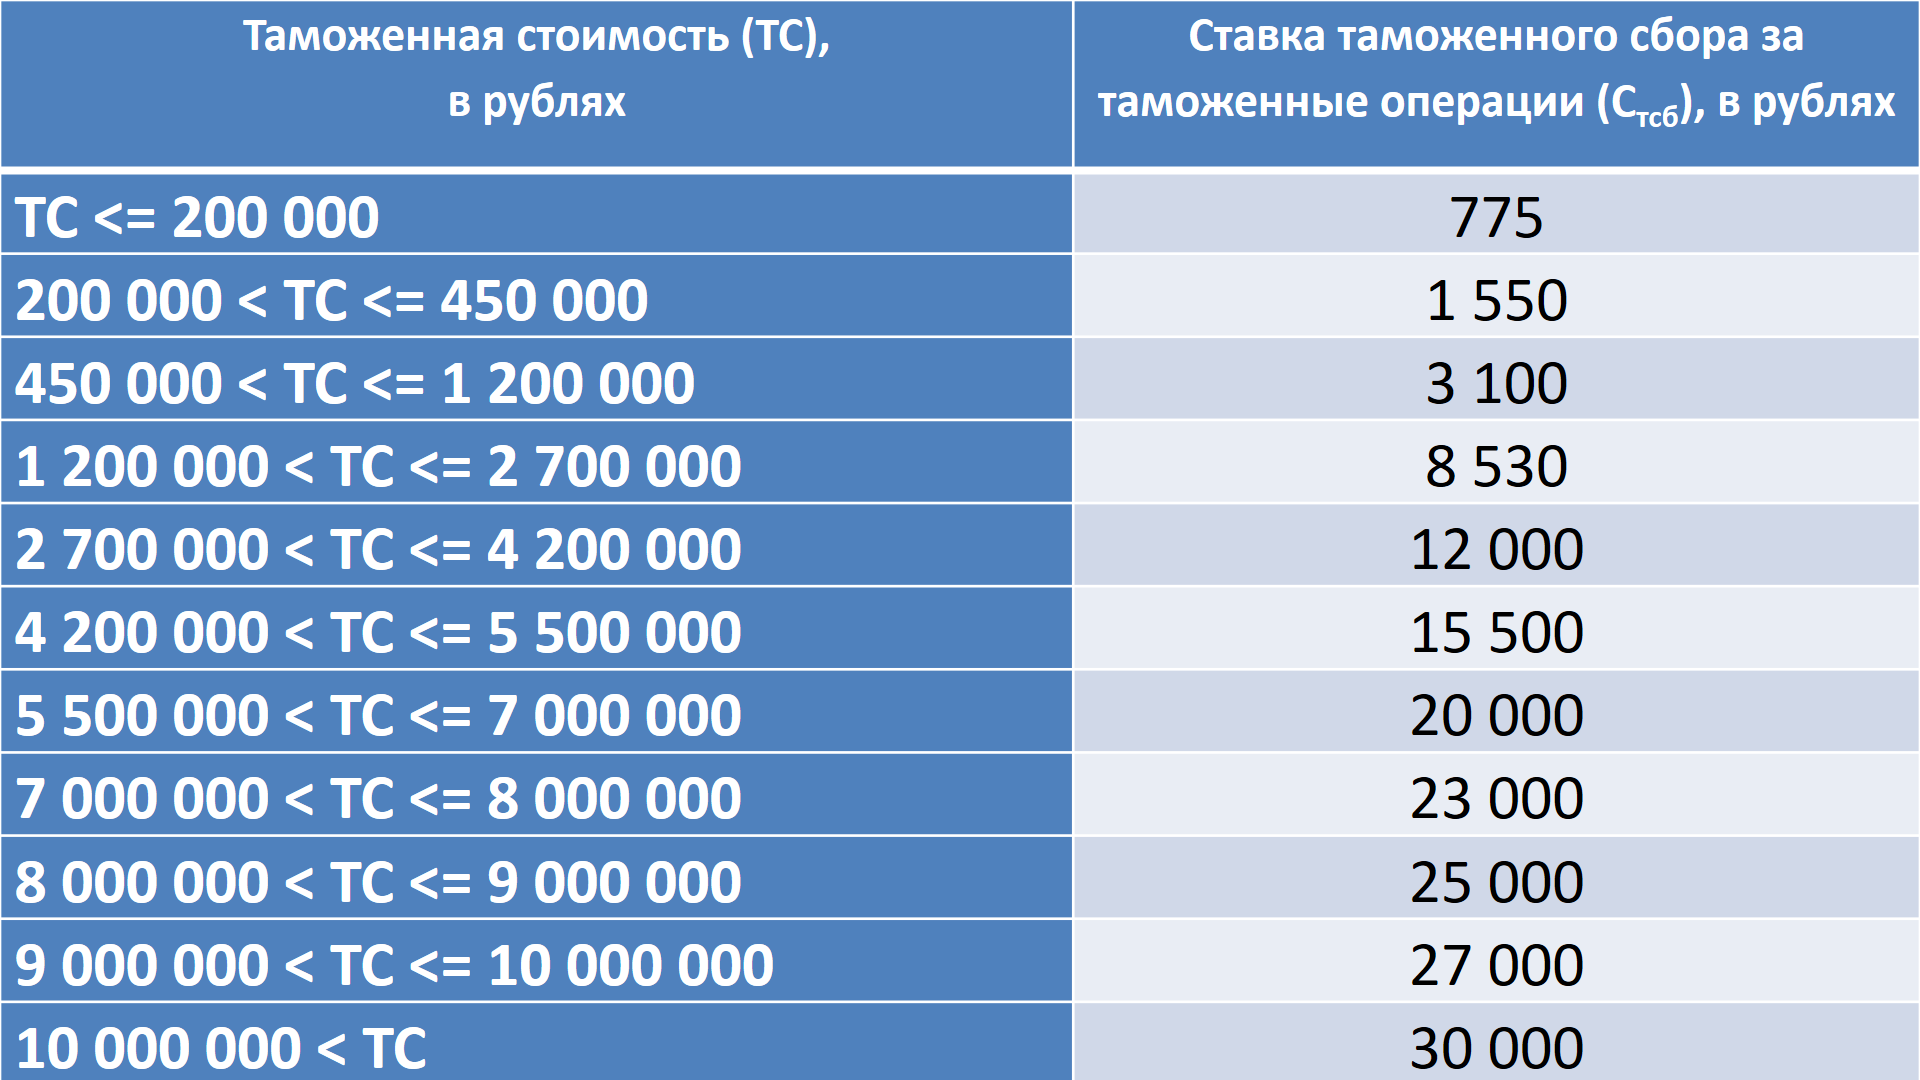 Информация минфина россии от 21 января 2021 г. “пересмотр порогов беспошлинного ввоза товаров касается только повторного перемещения в течение месяца”